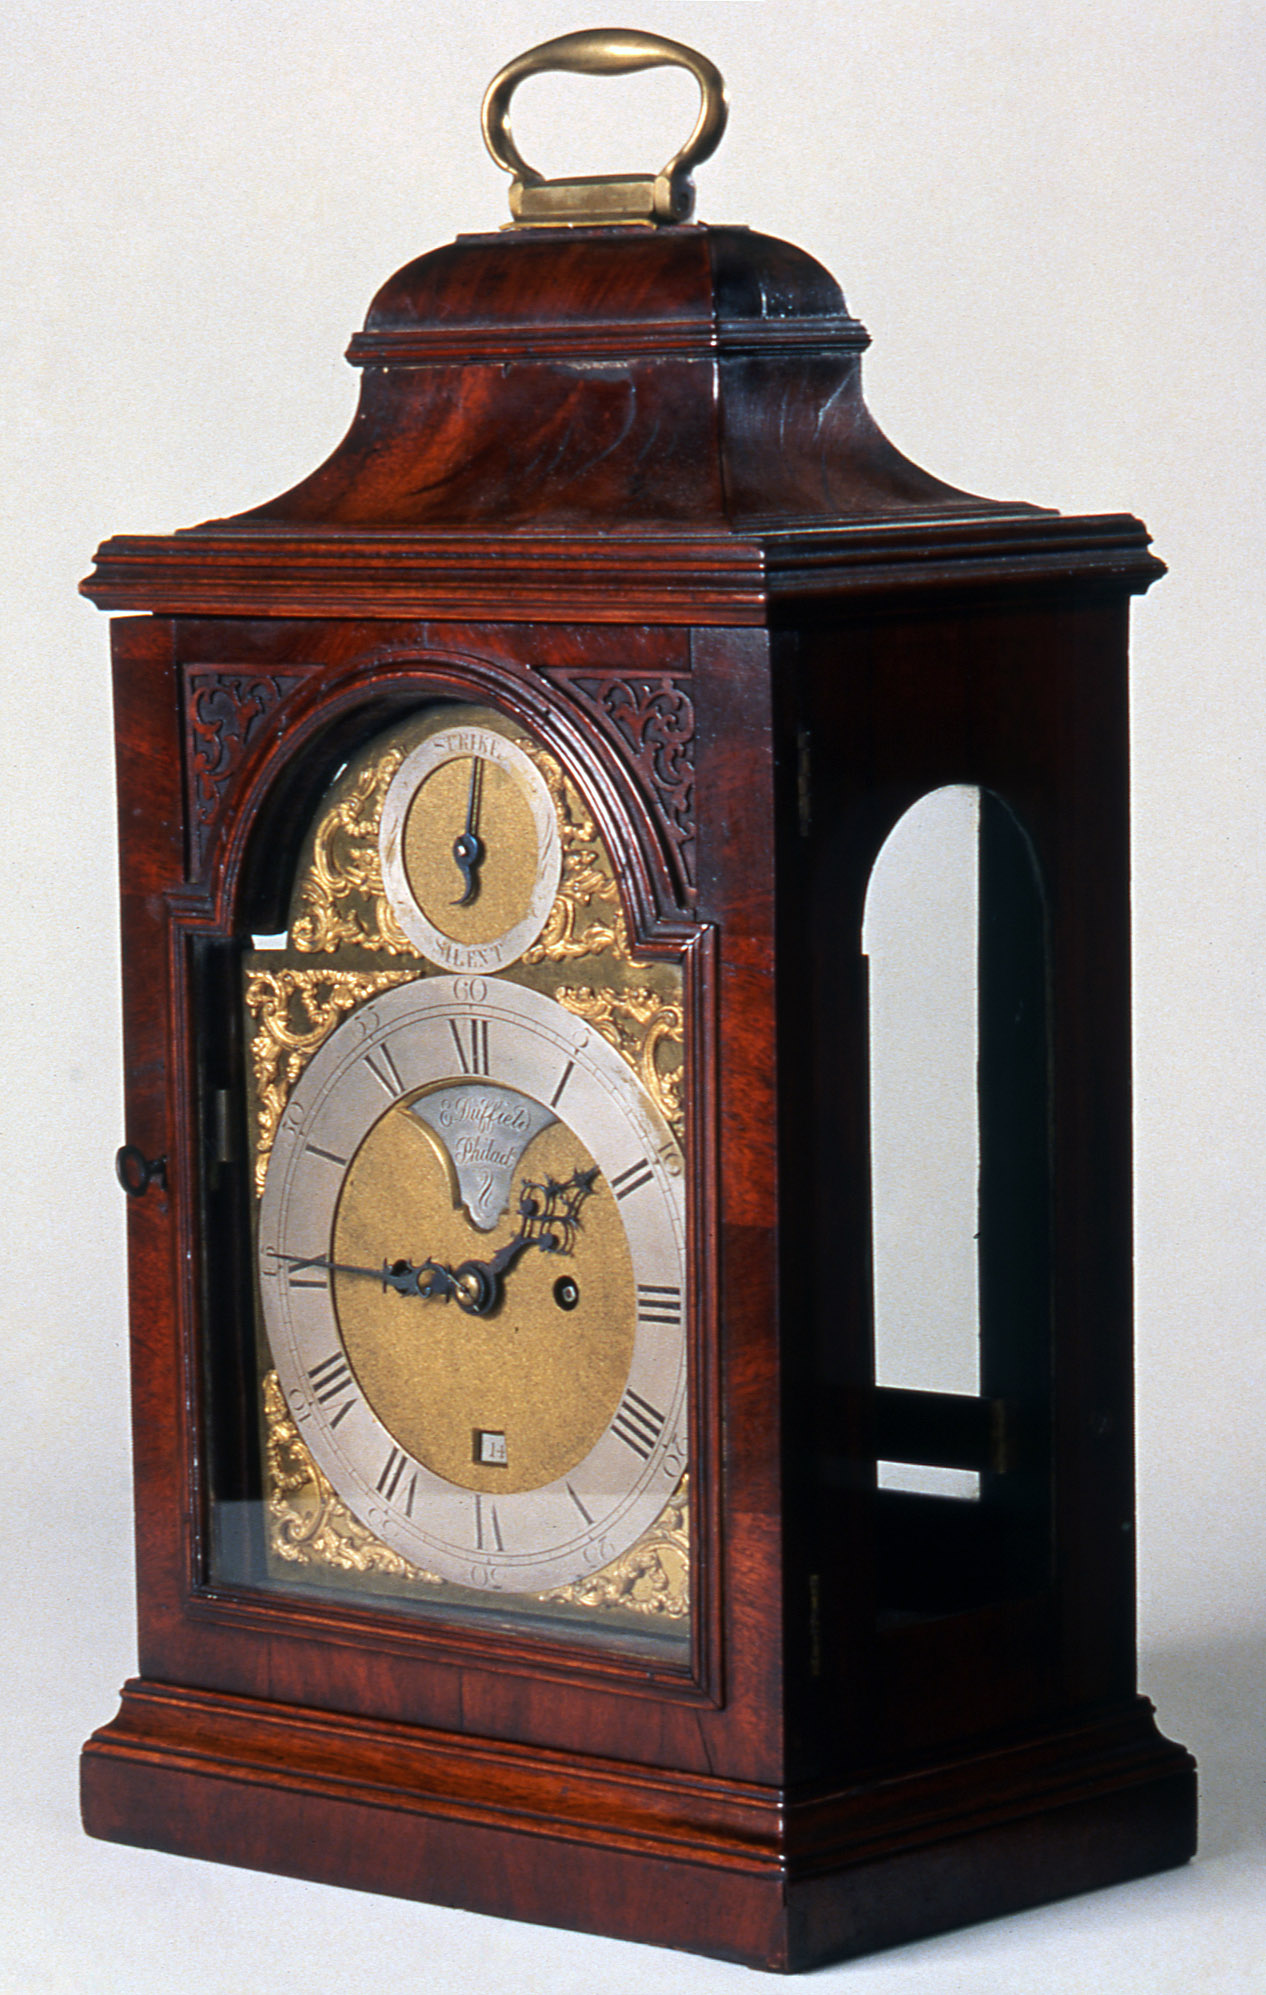 1958.1929 Clock, Bracket clock